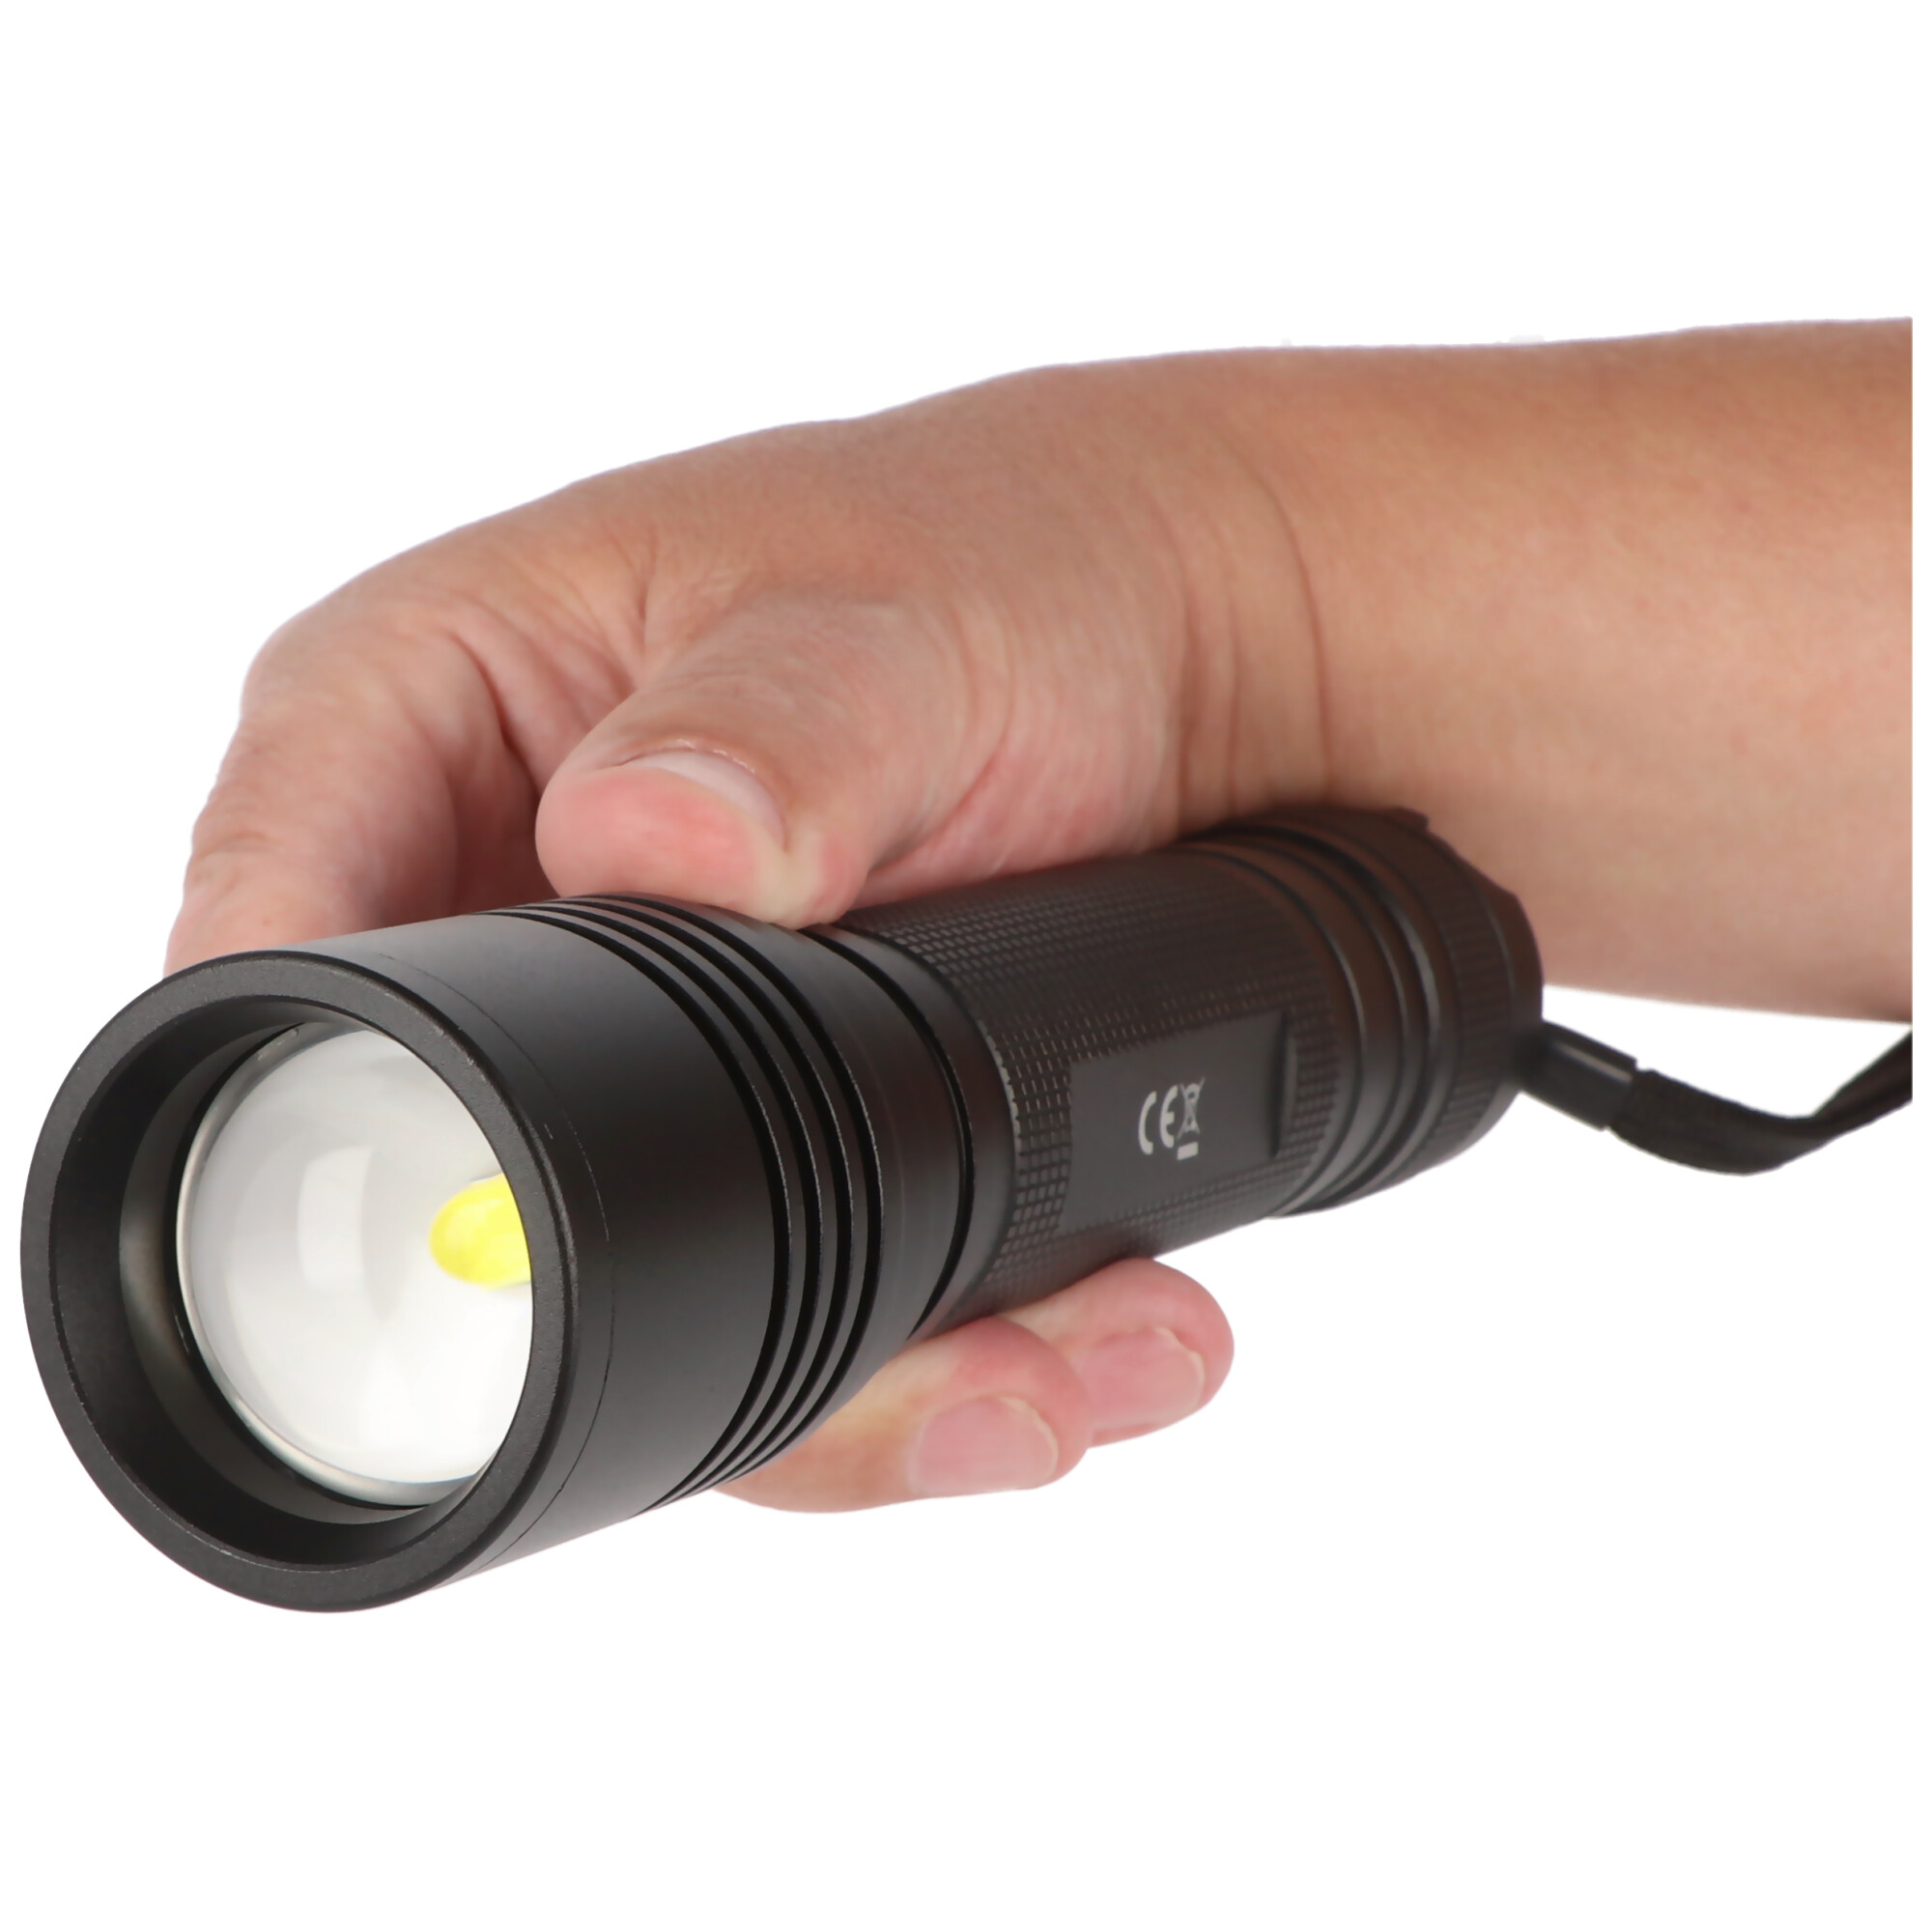 18W Zoom LED Hochleistungstaschenlampe für 6 Stück Mignon AA, mit Schiebefokus zum Zoomen